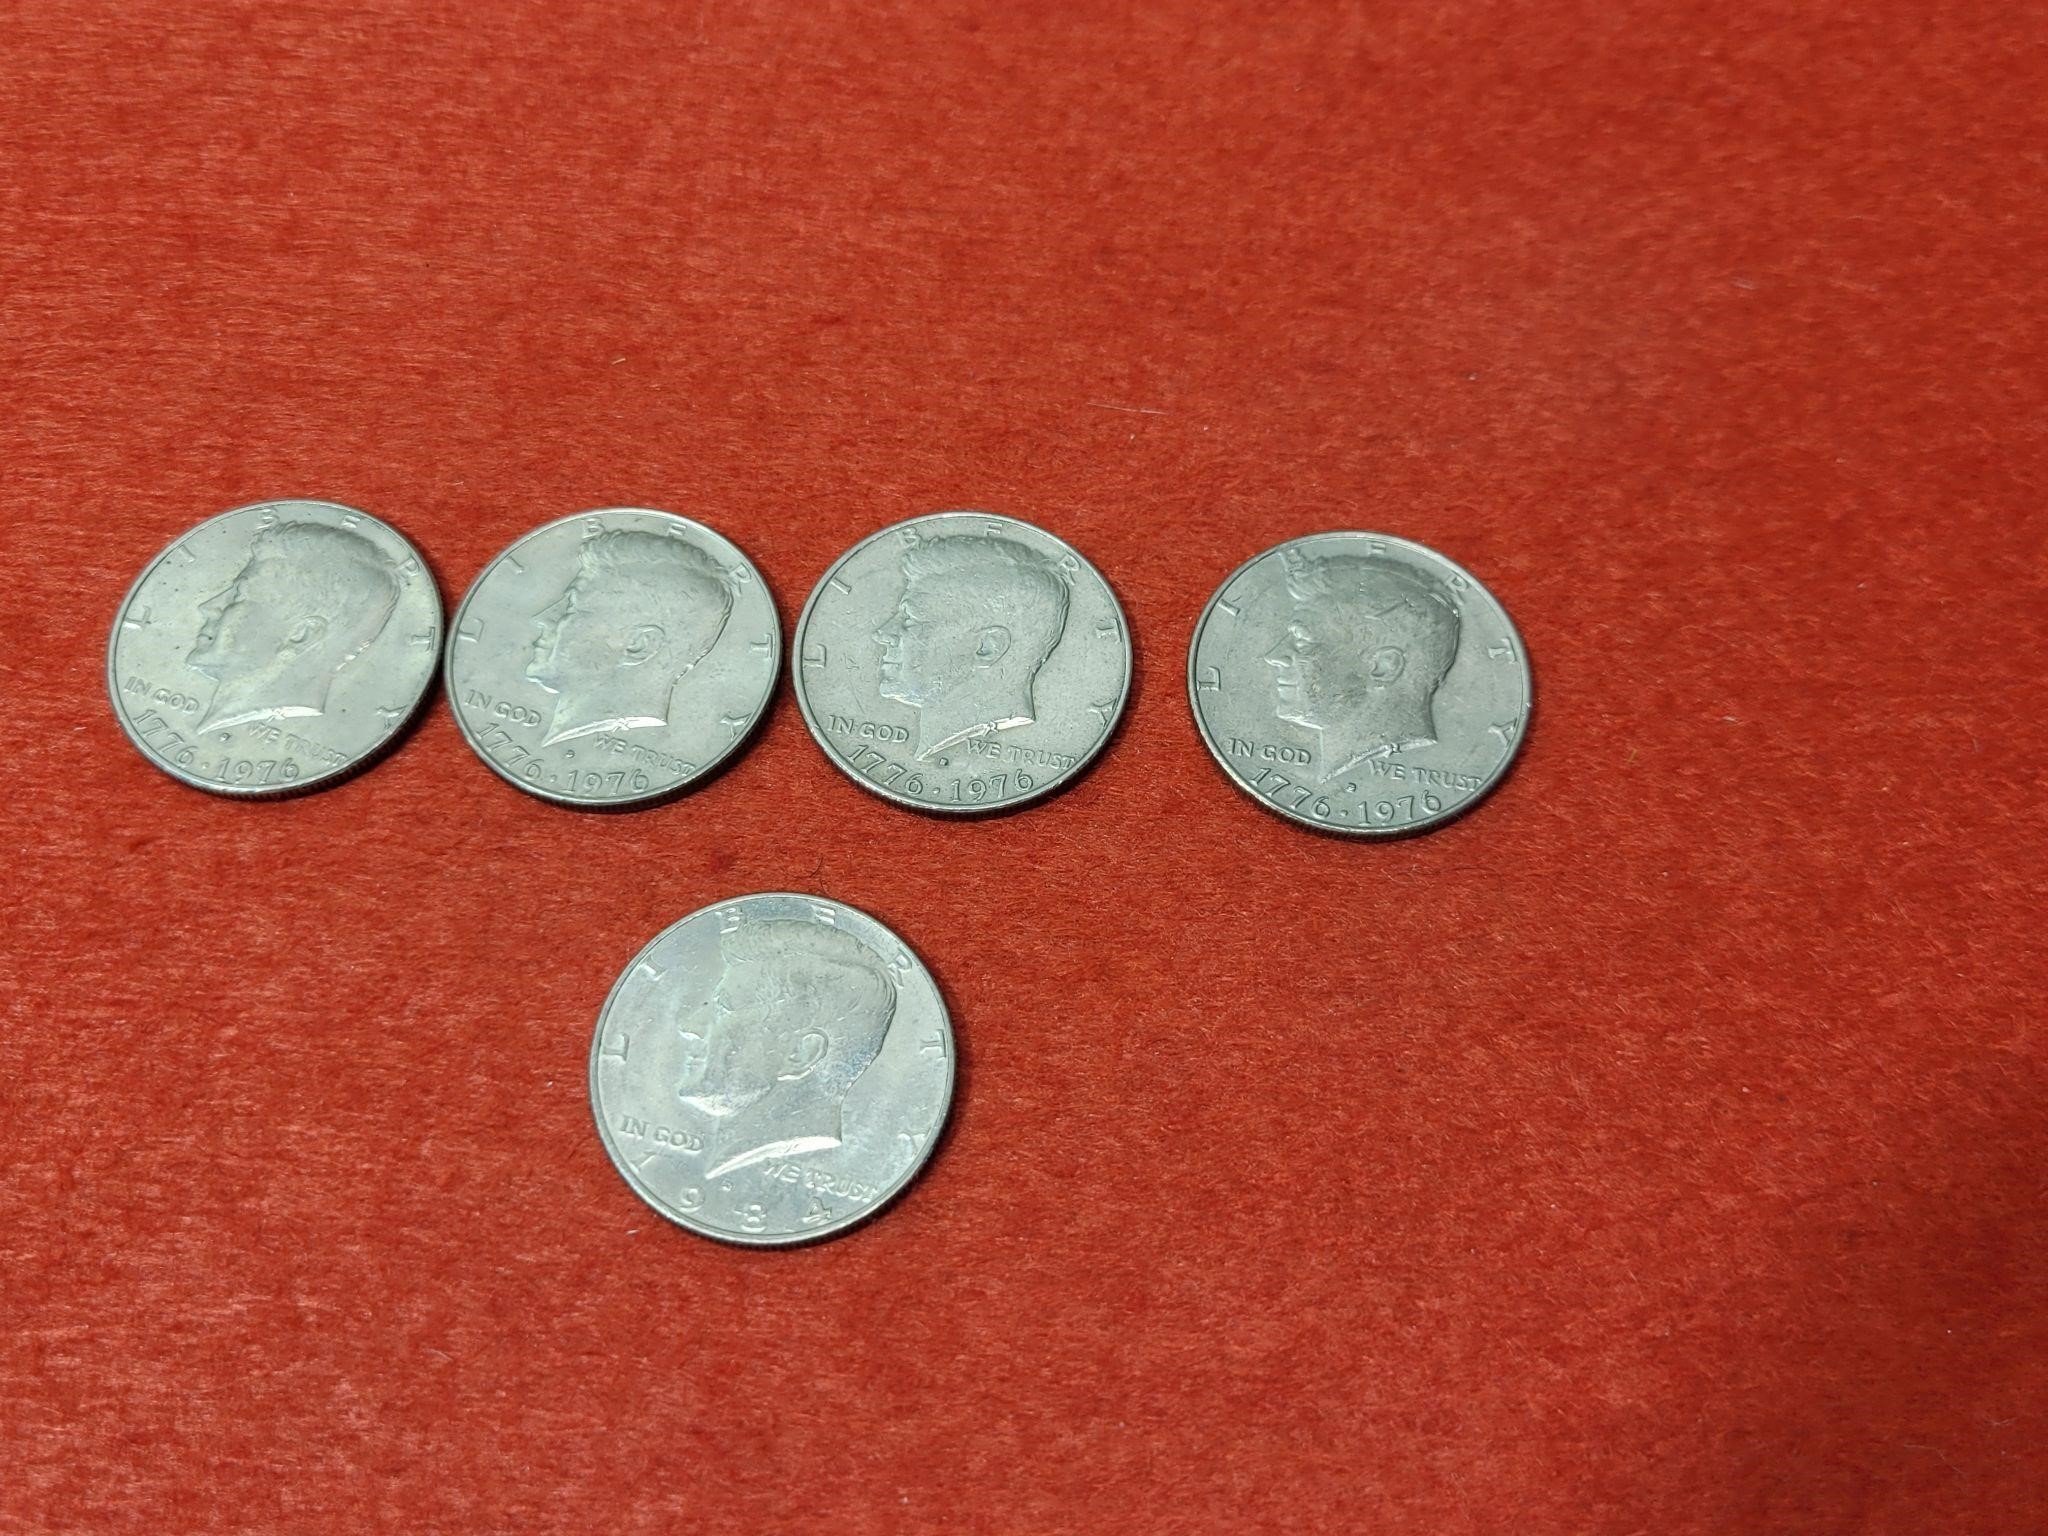 (5) Kennedy Half Dollars - 4 - 1976, 1- 1984